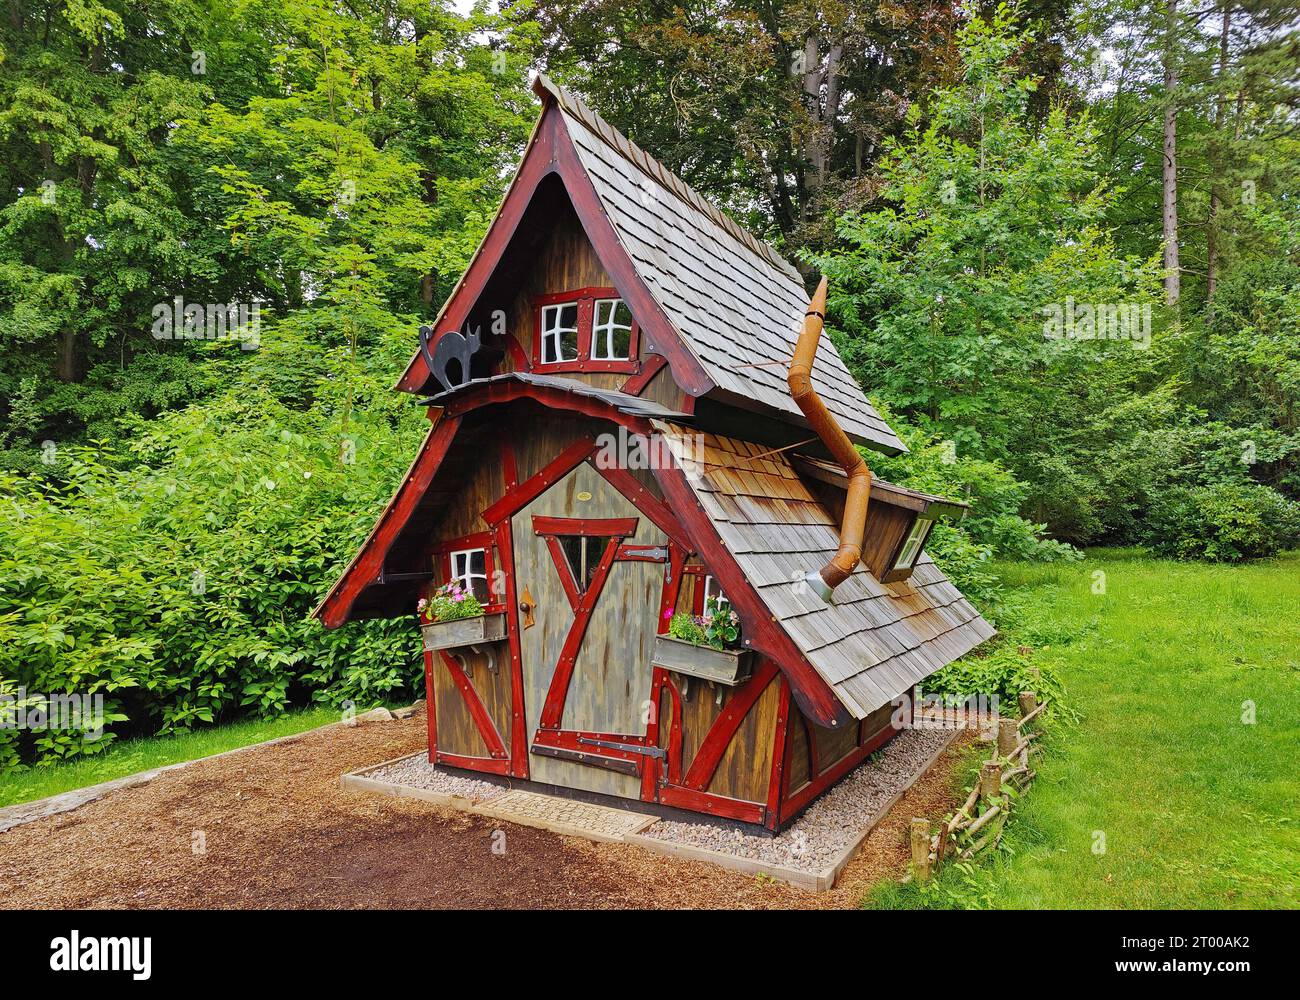 Petite maison de sorcière comme du conte de fées pour les enfants dans le parc thermal, Bad Pyrmont, Allemagne Banque D'Images